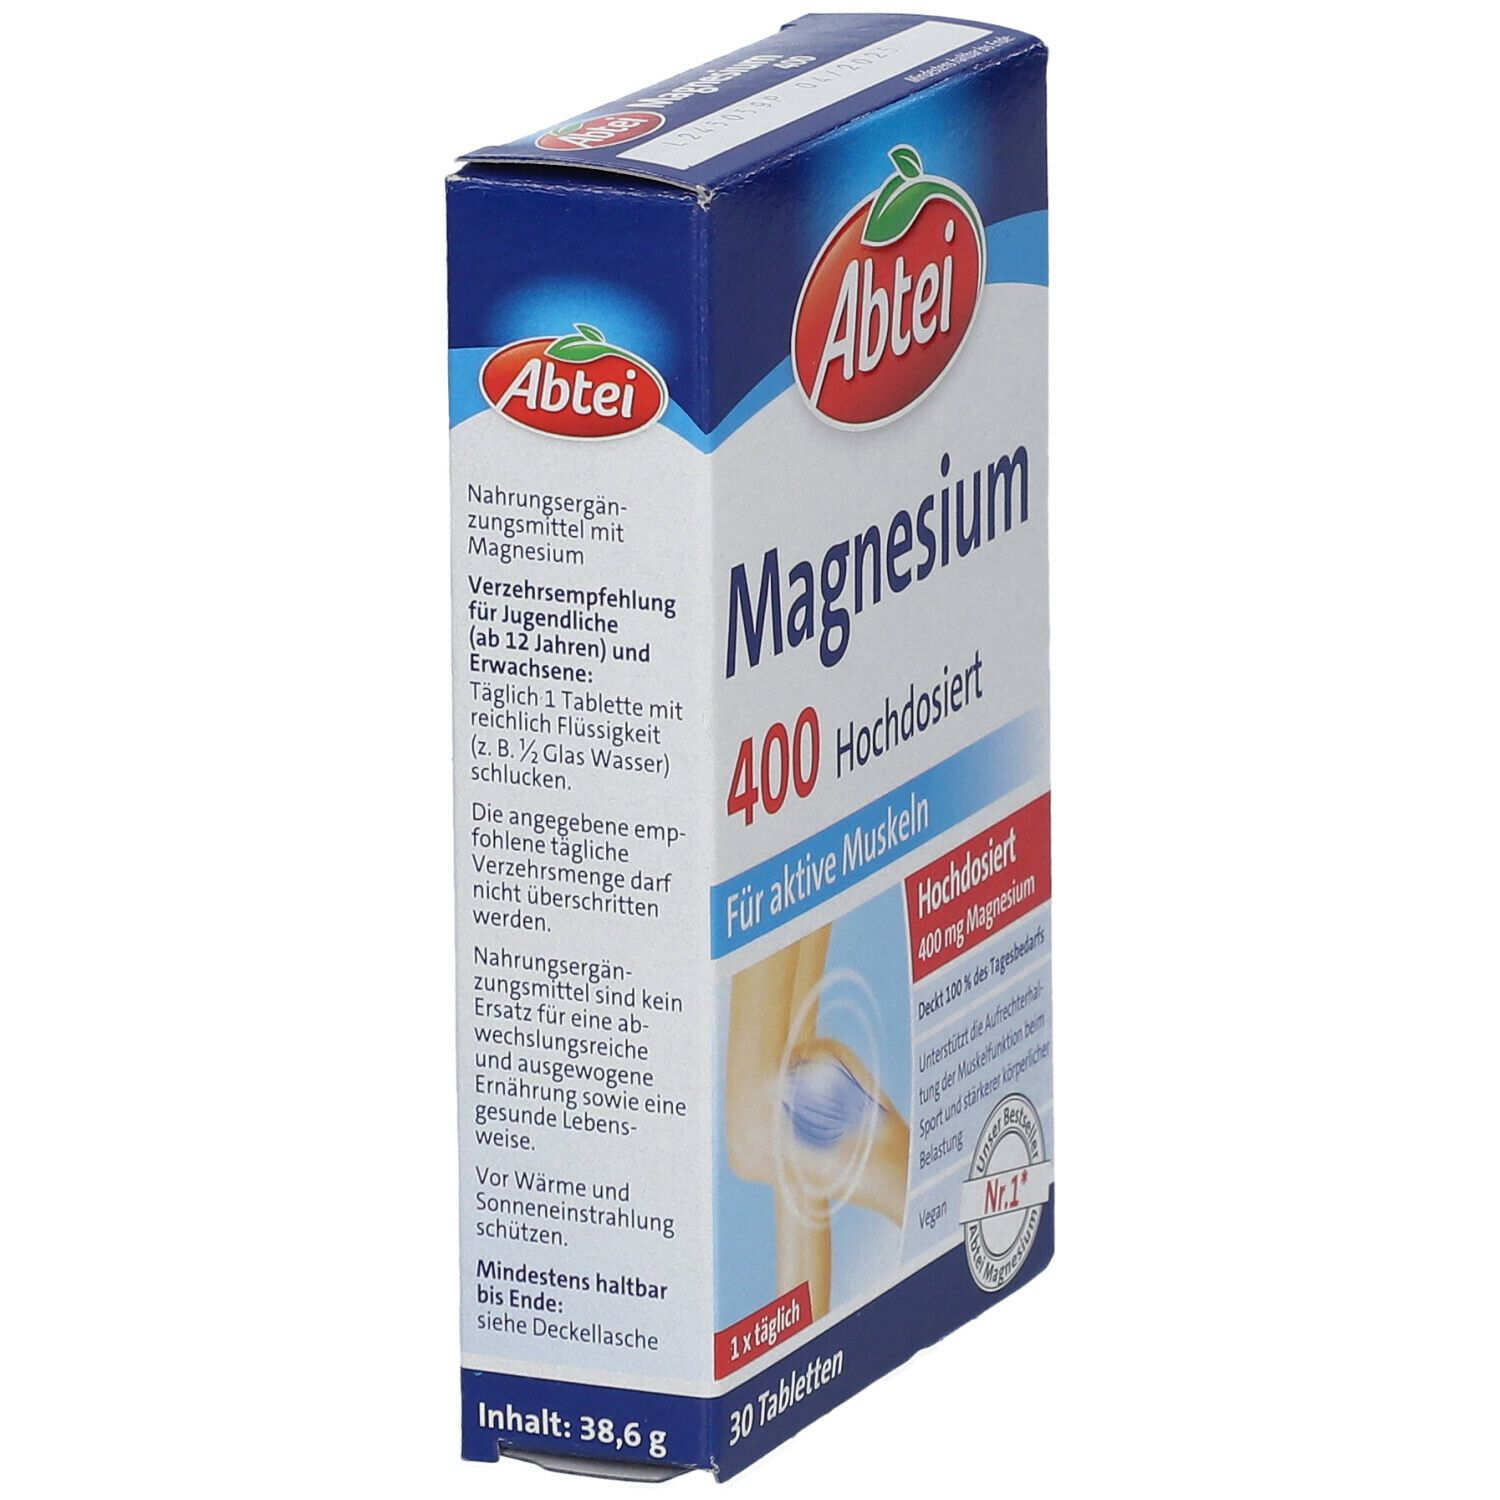 Abtei Magnesium 400 hochdosiert